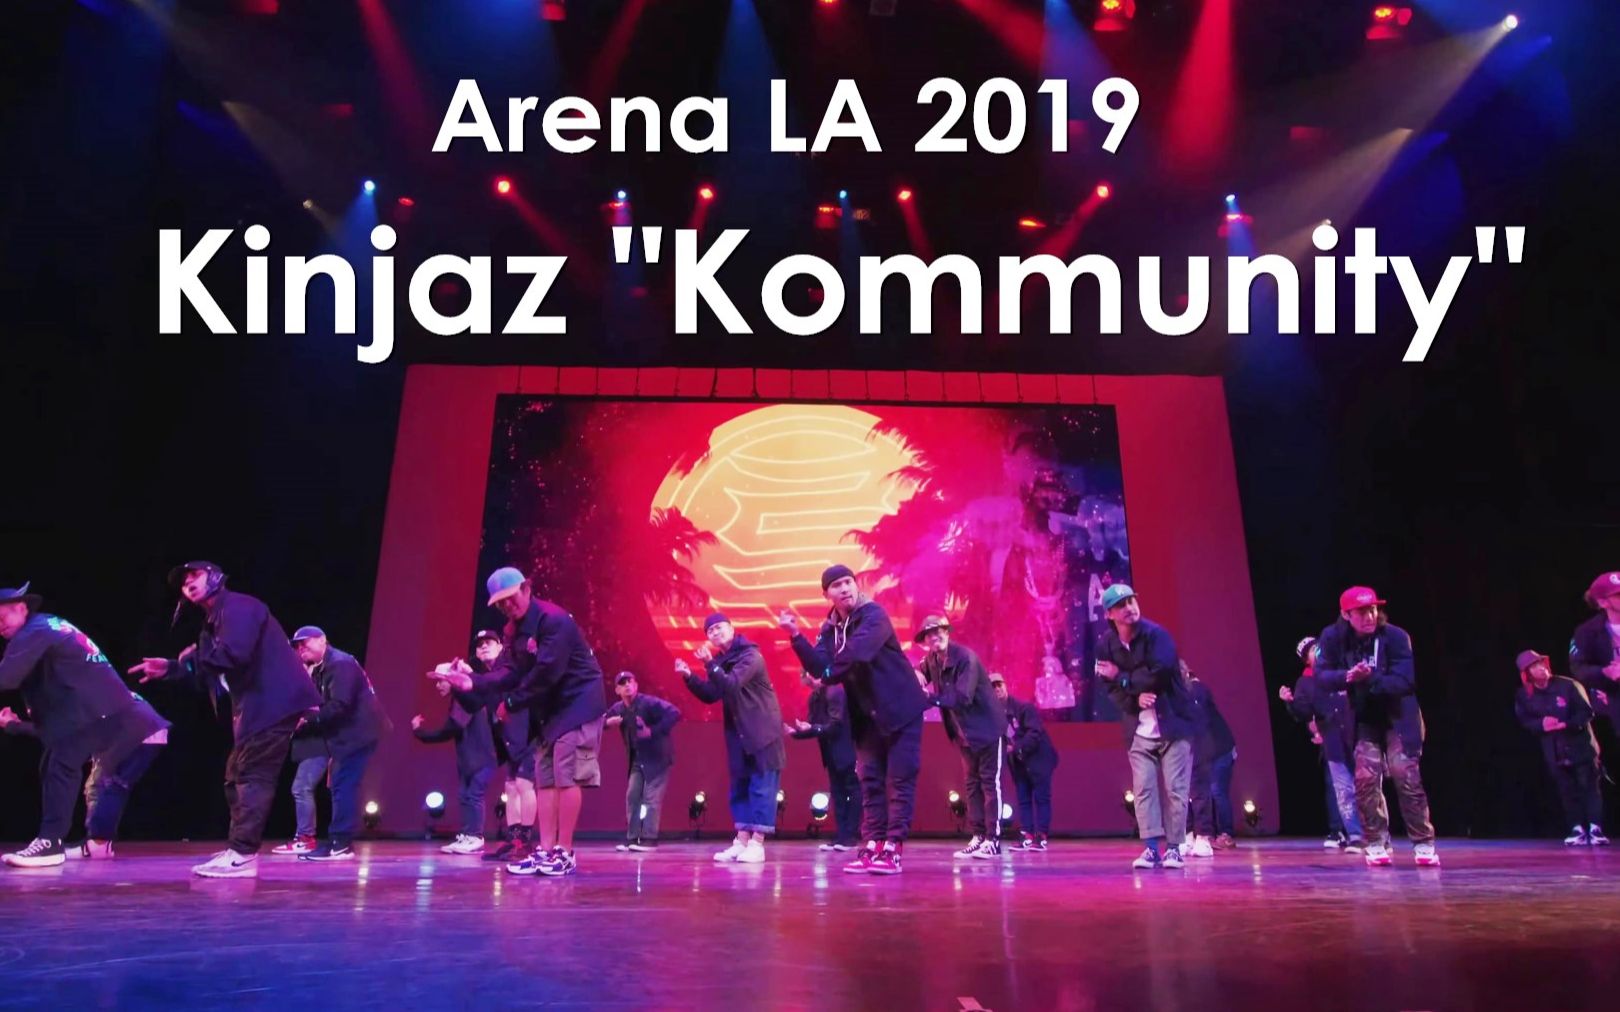 帅炸忍者团Kinjaz美国Arena LA站2019现场表演 "Kommunity"叫上兄弟们一起嗨！